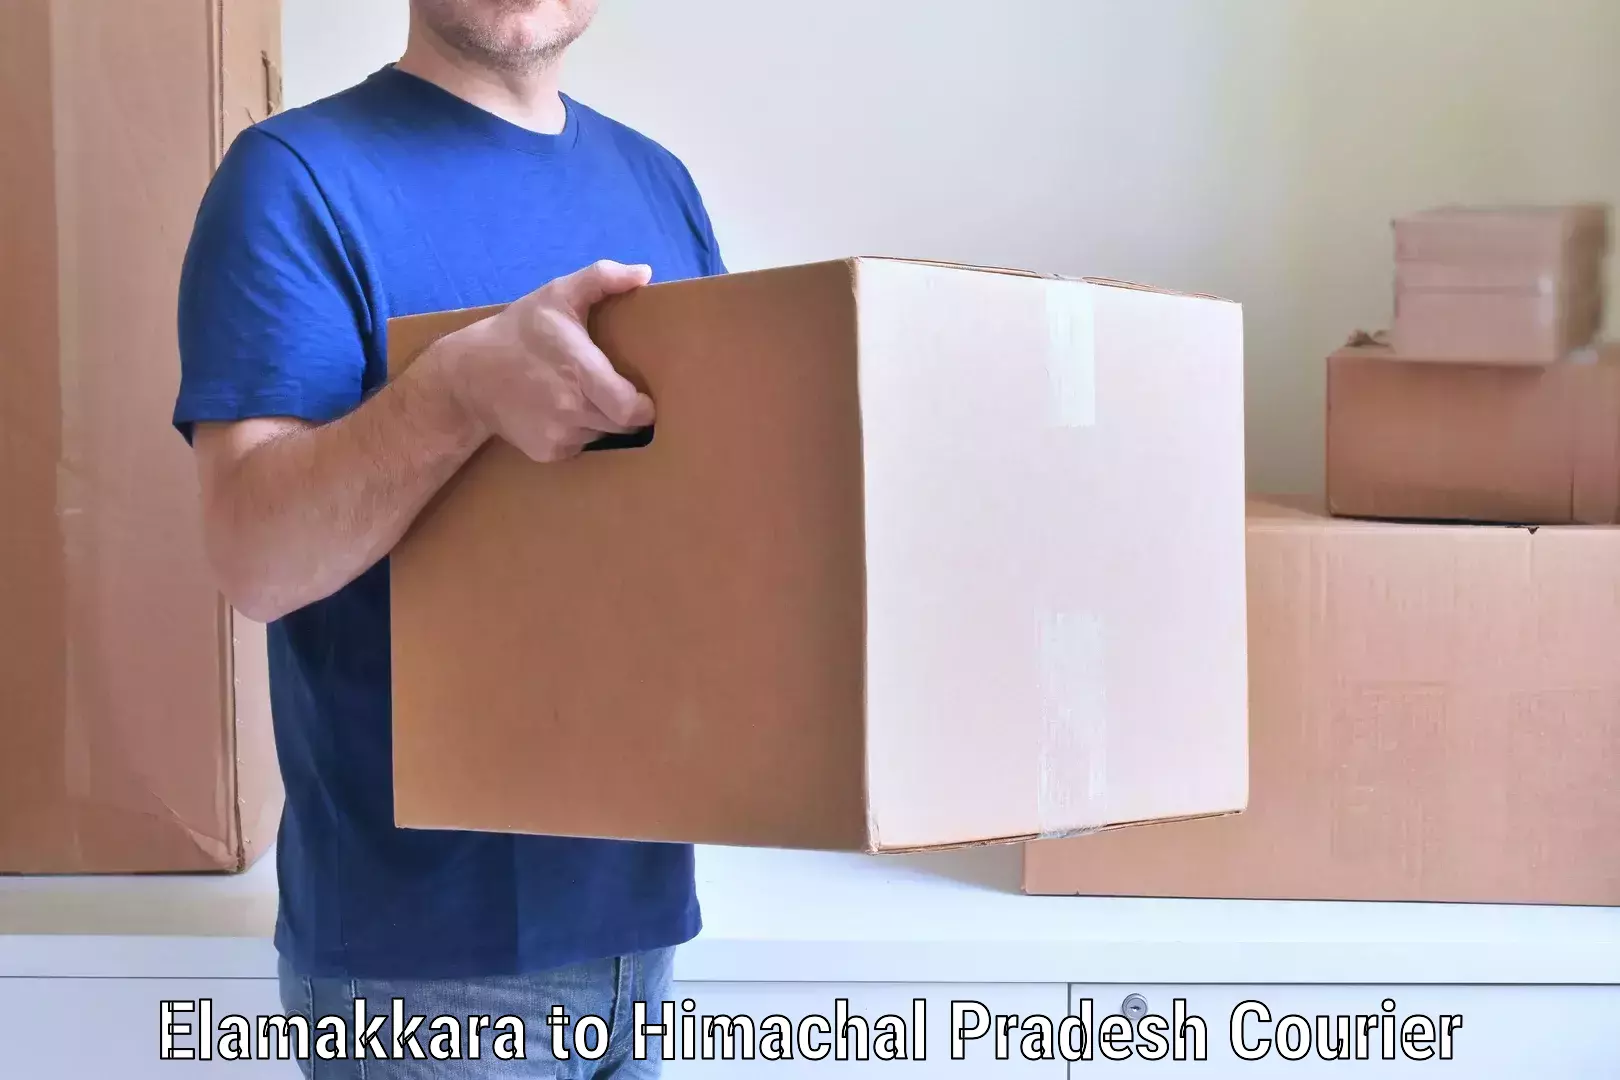 Home goods moving company Elamakkara to Baijnath